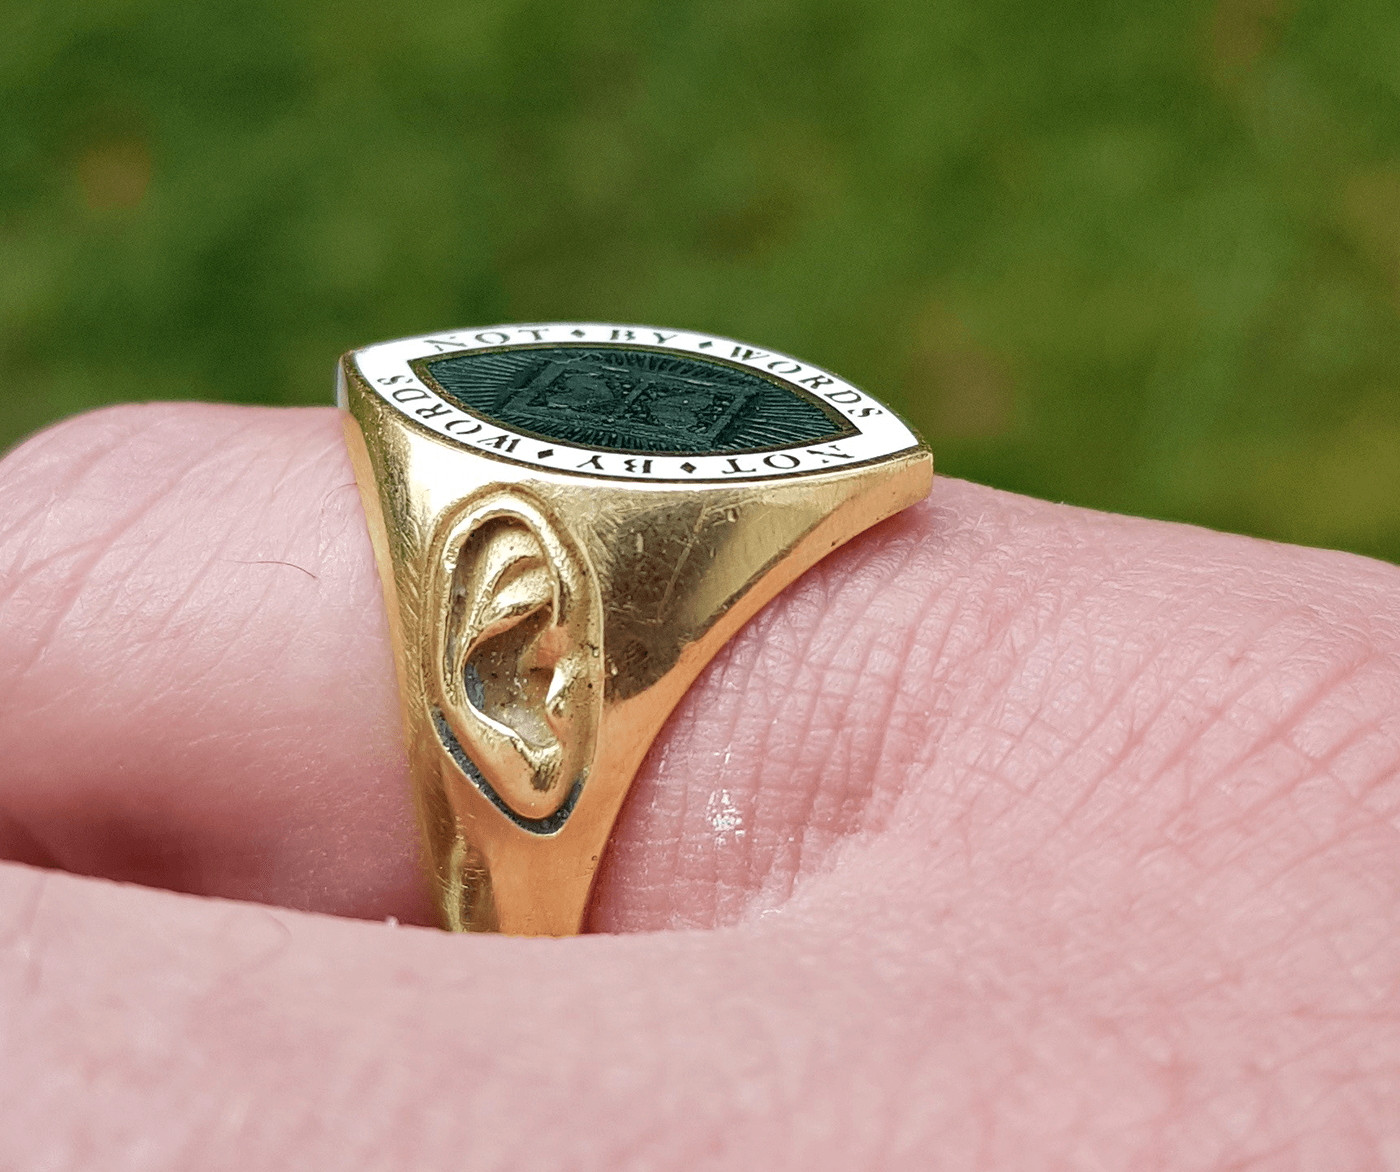 Bespoke Rebus hand engraved memento mori signet ring in 18ct yellow gold and enamel